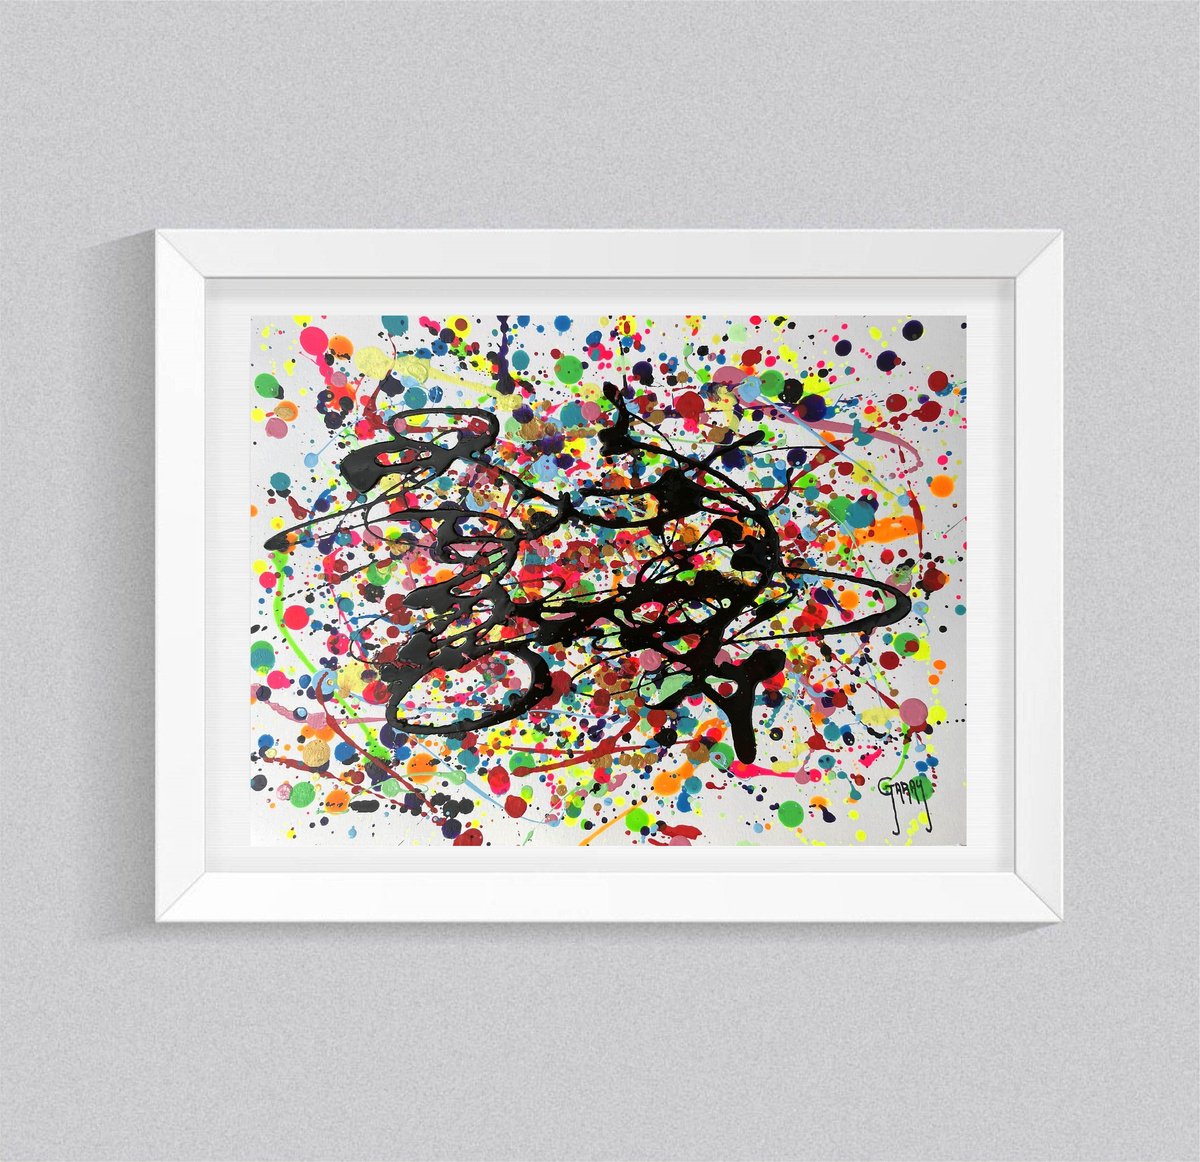 Abstract Pollock 14 by Juan Jose Garay